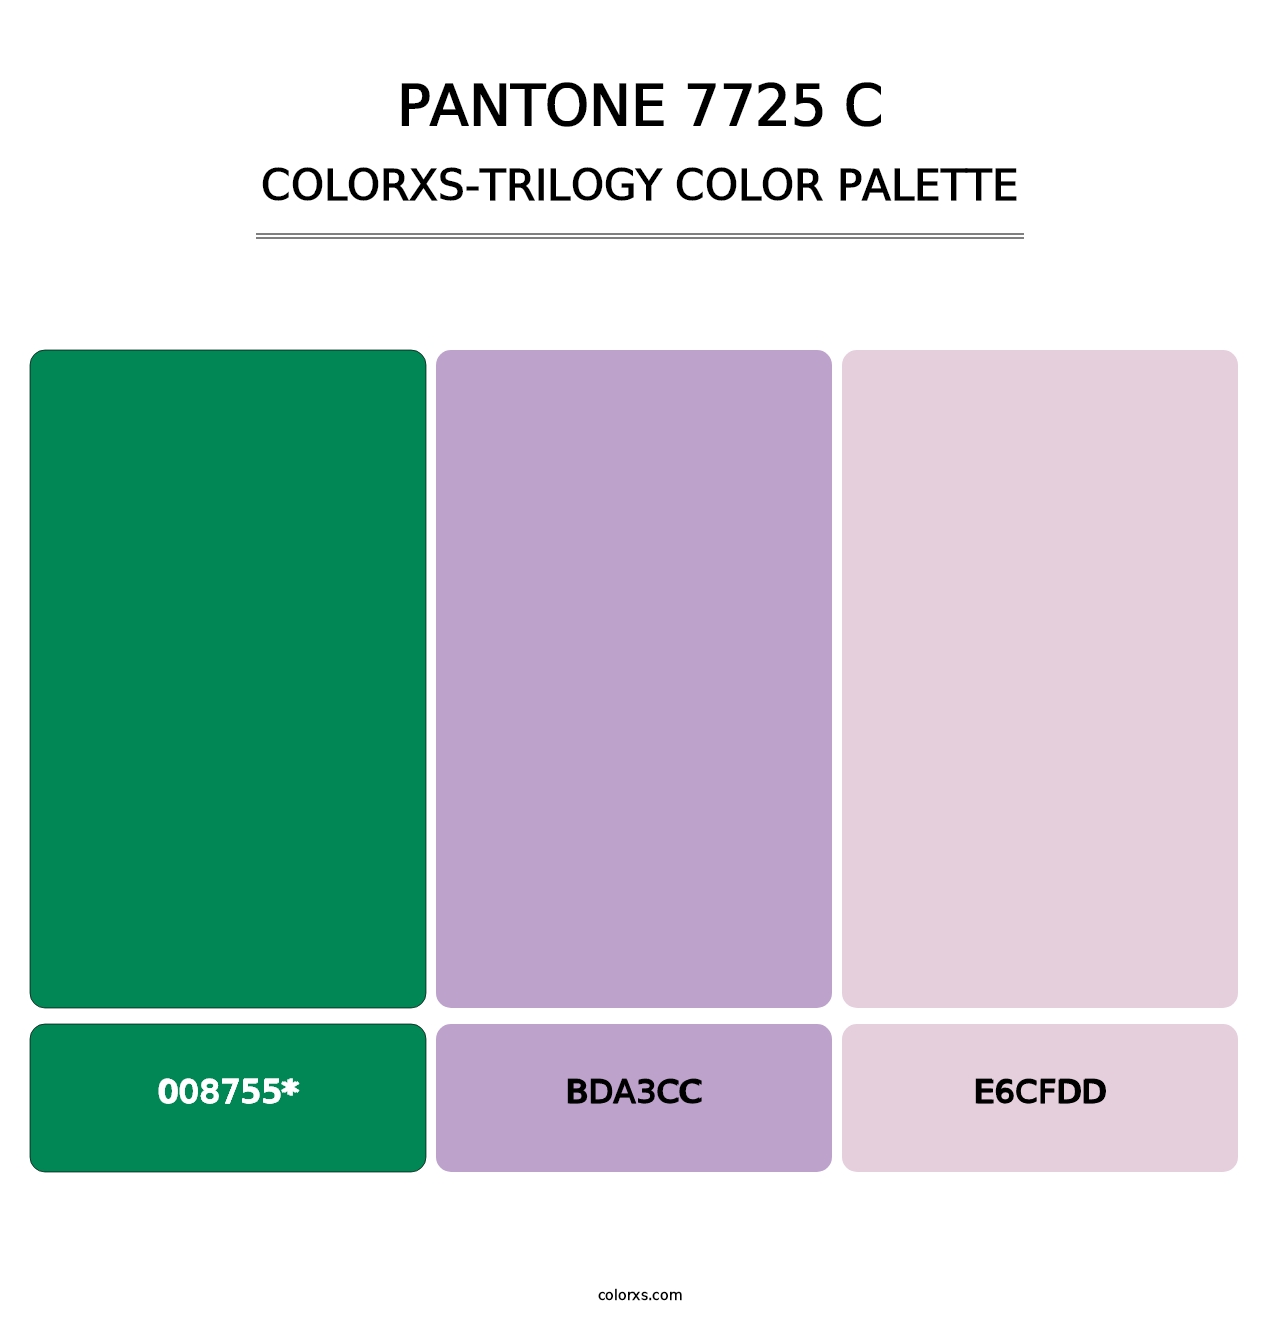 PANTONE 7725 C - Colorxs Trilogy Palette